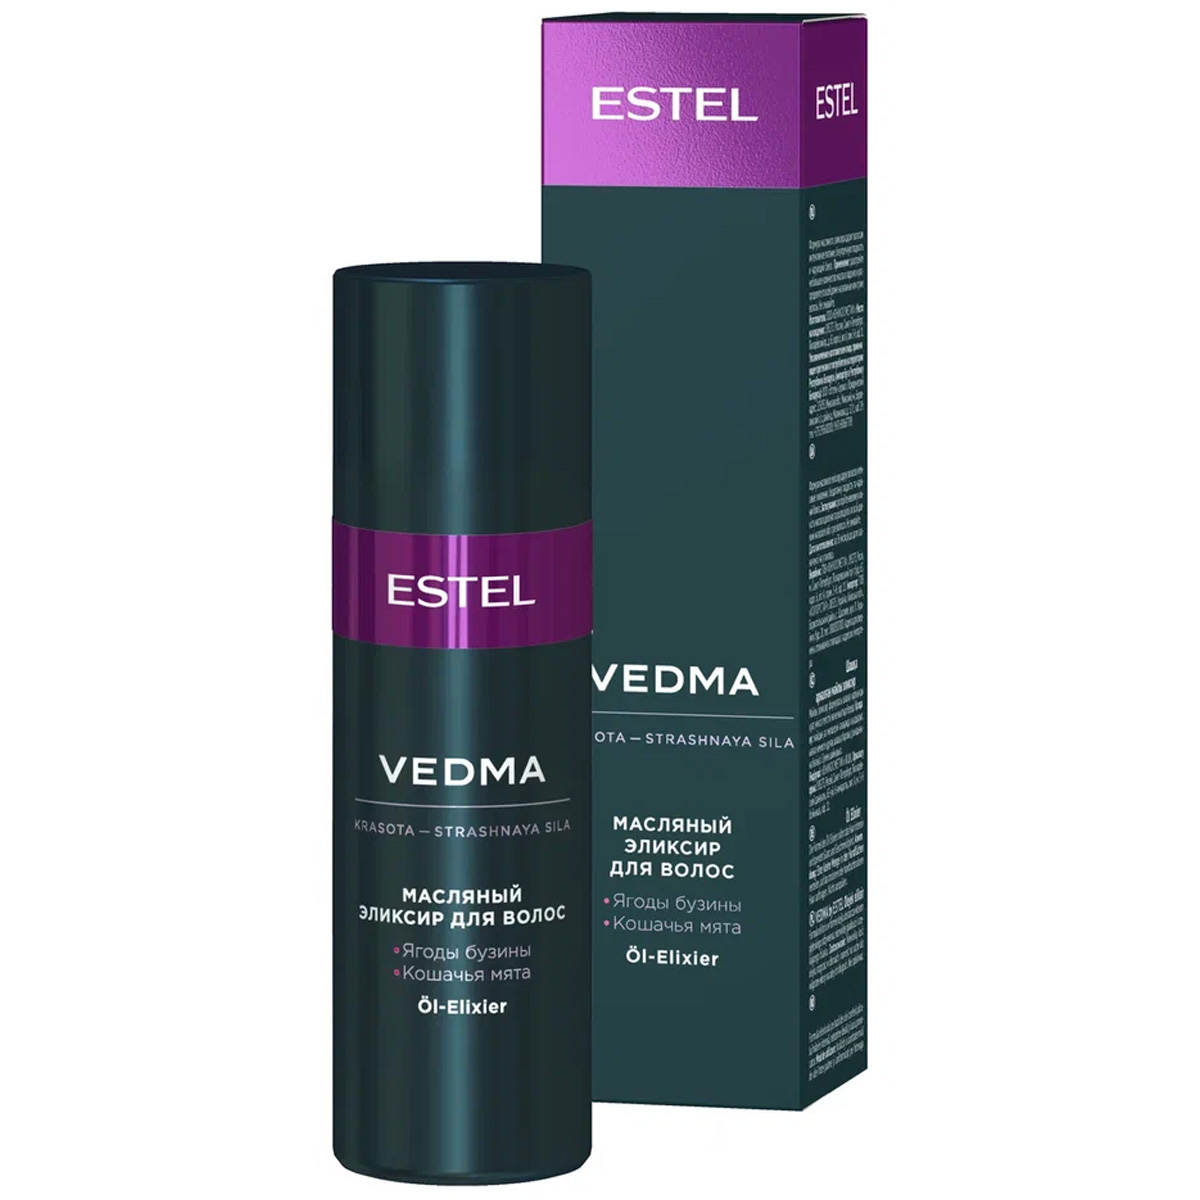 Estel Масляный эликсир для волос, 50 мл (Estel, Vedma)